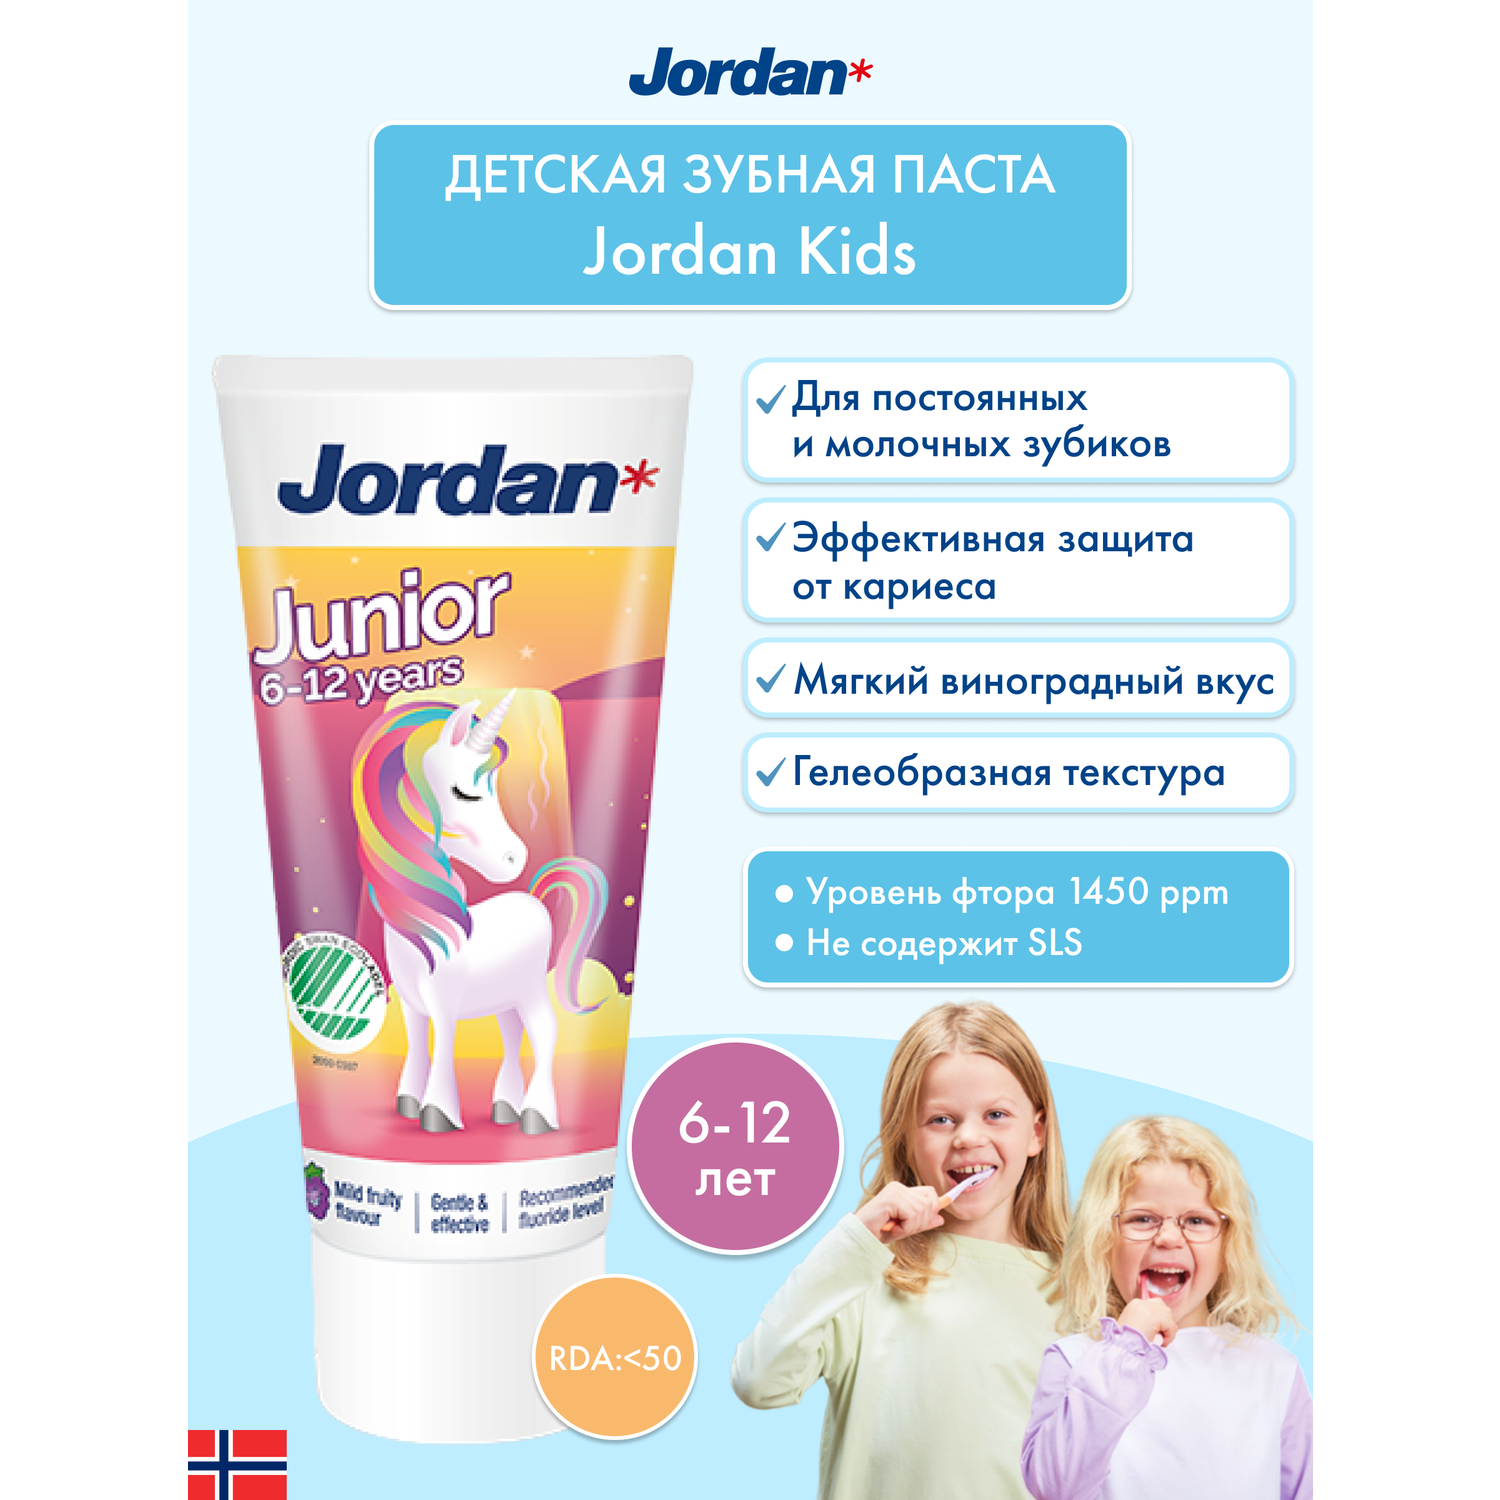 Детская зубная паста JORDAN Junior 6-12 с фтором и нежным фруктовым вкусом - фото 2